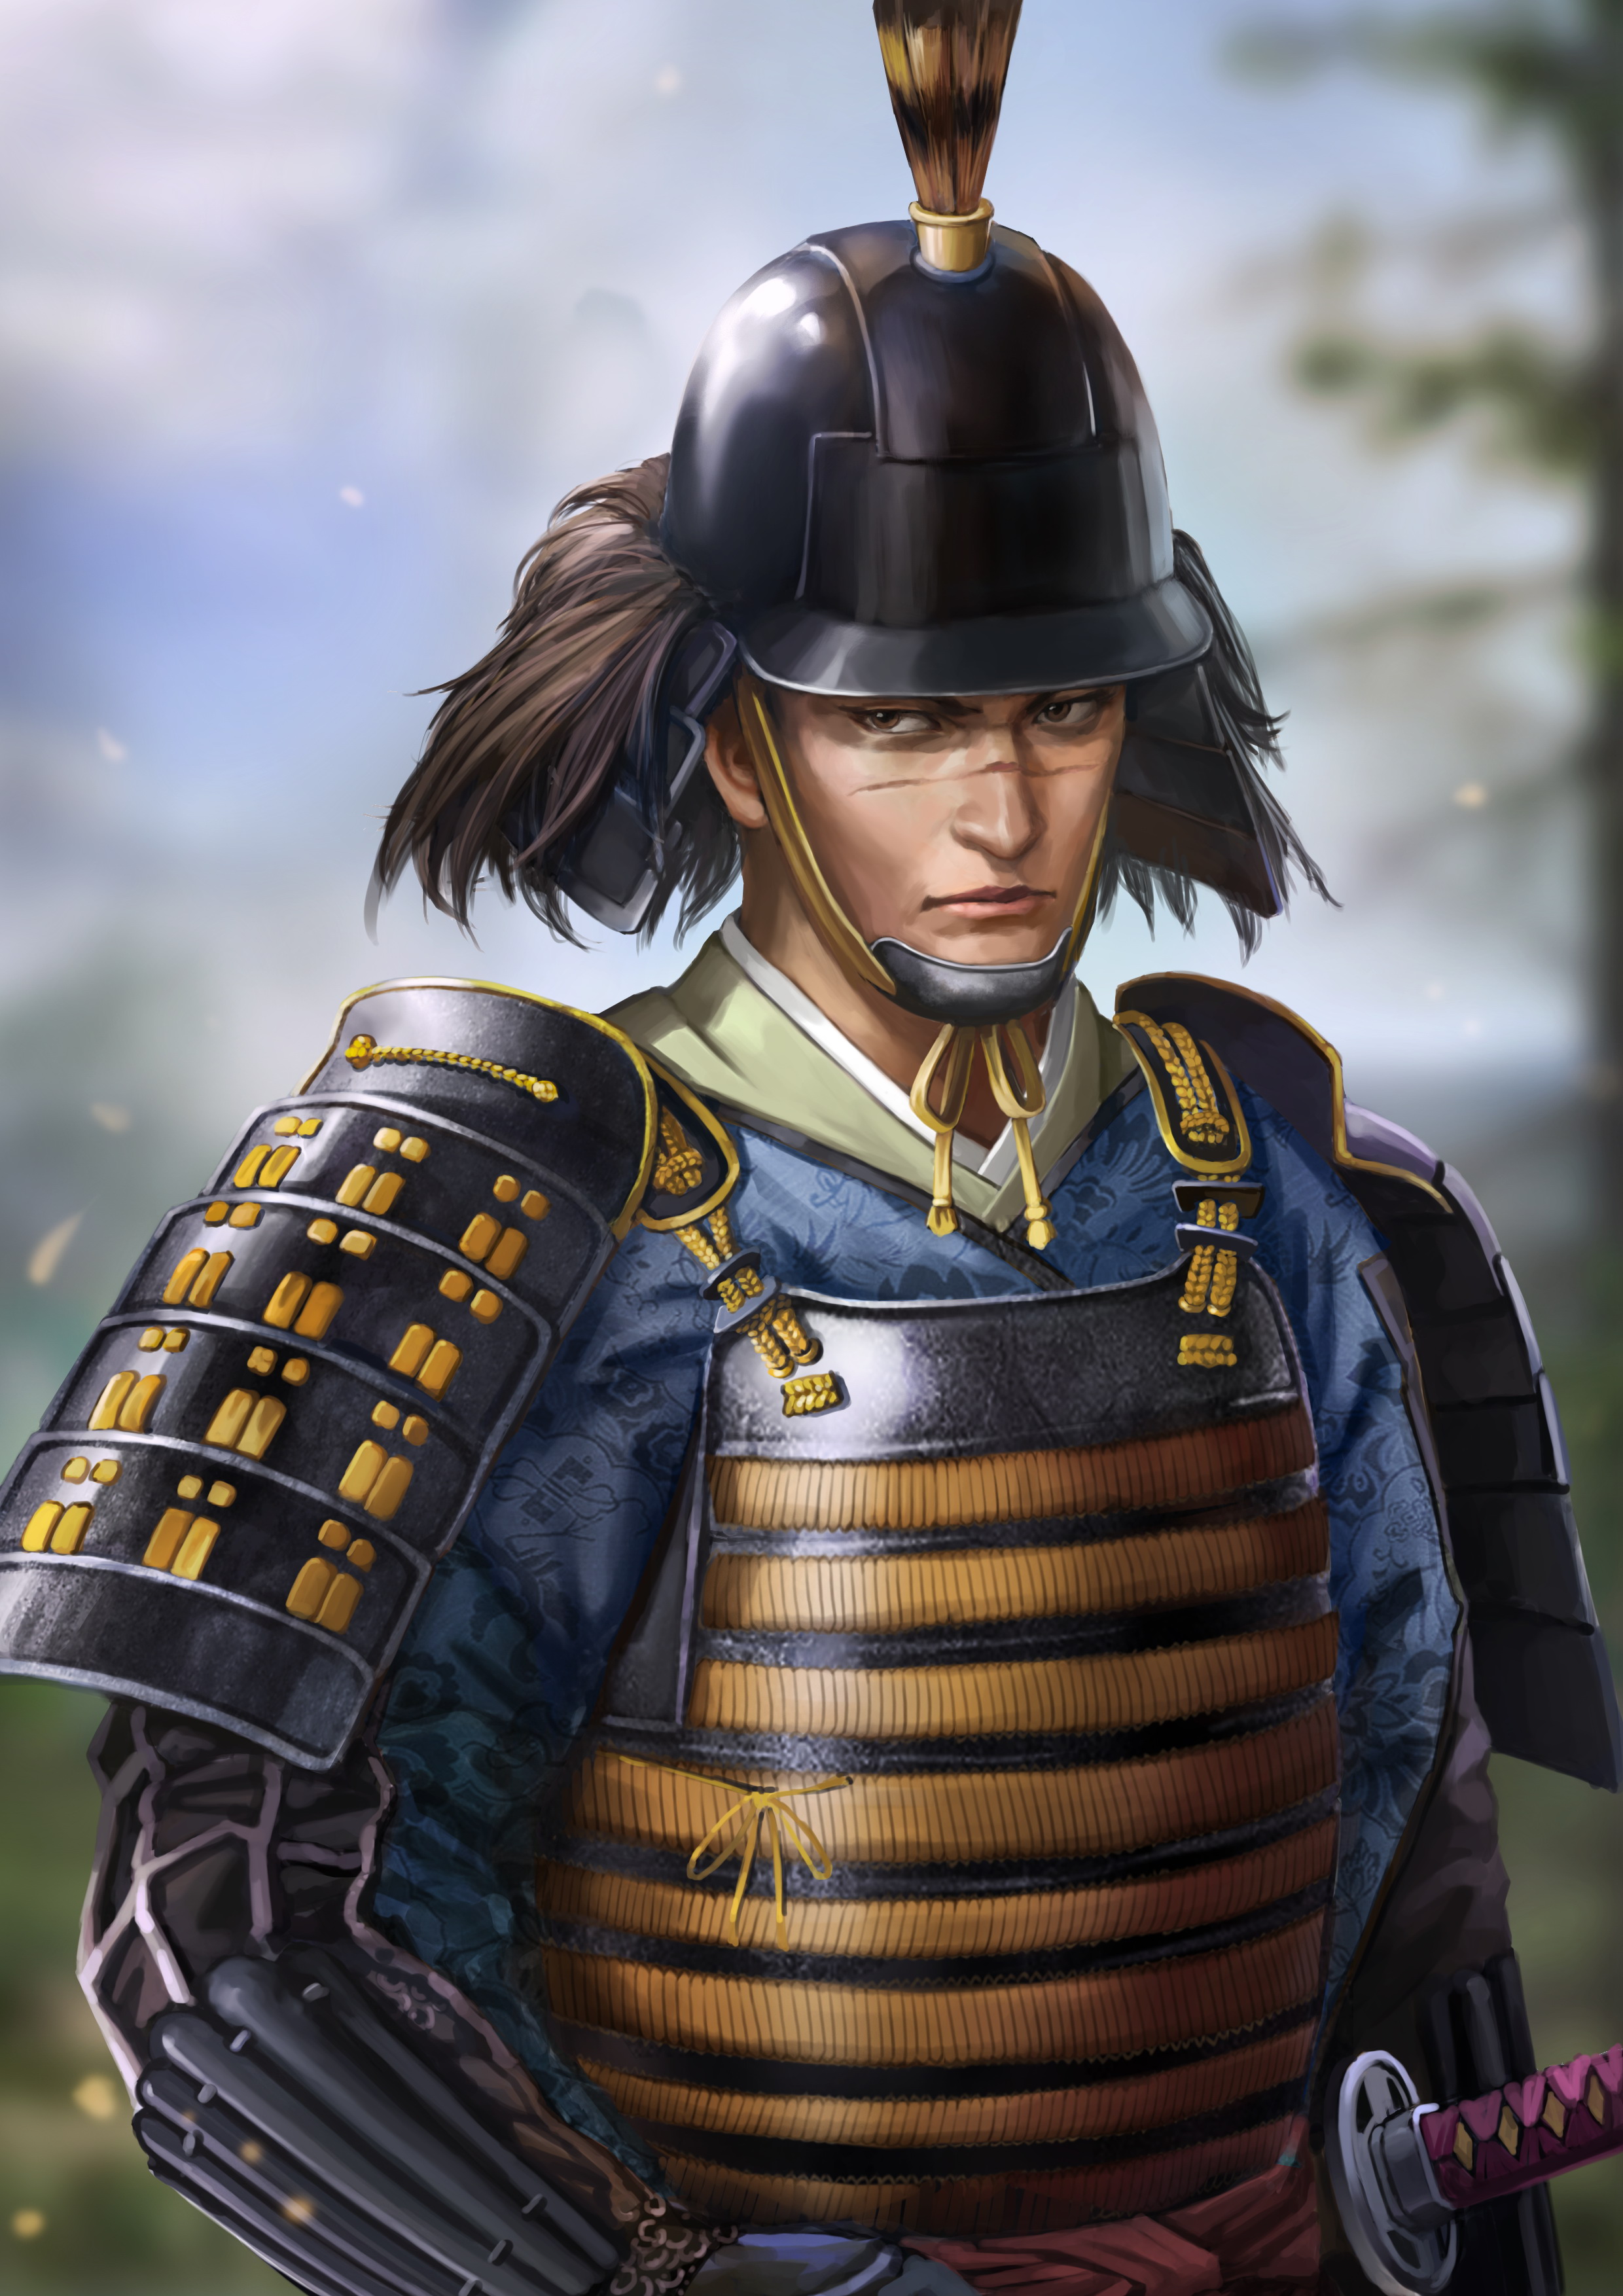 nobunaga ambition sphere of influence